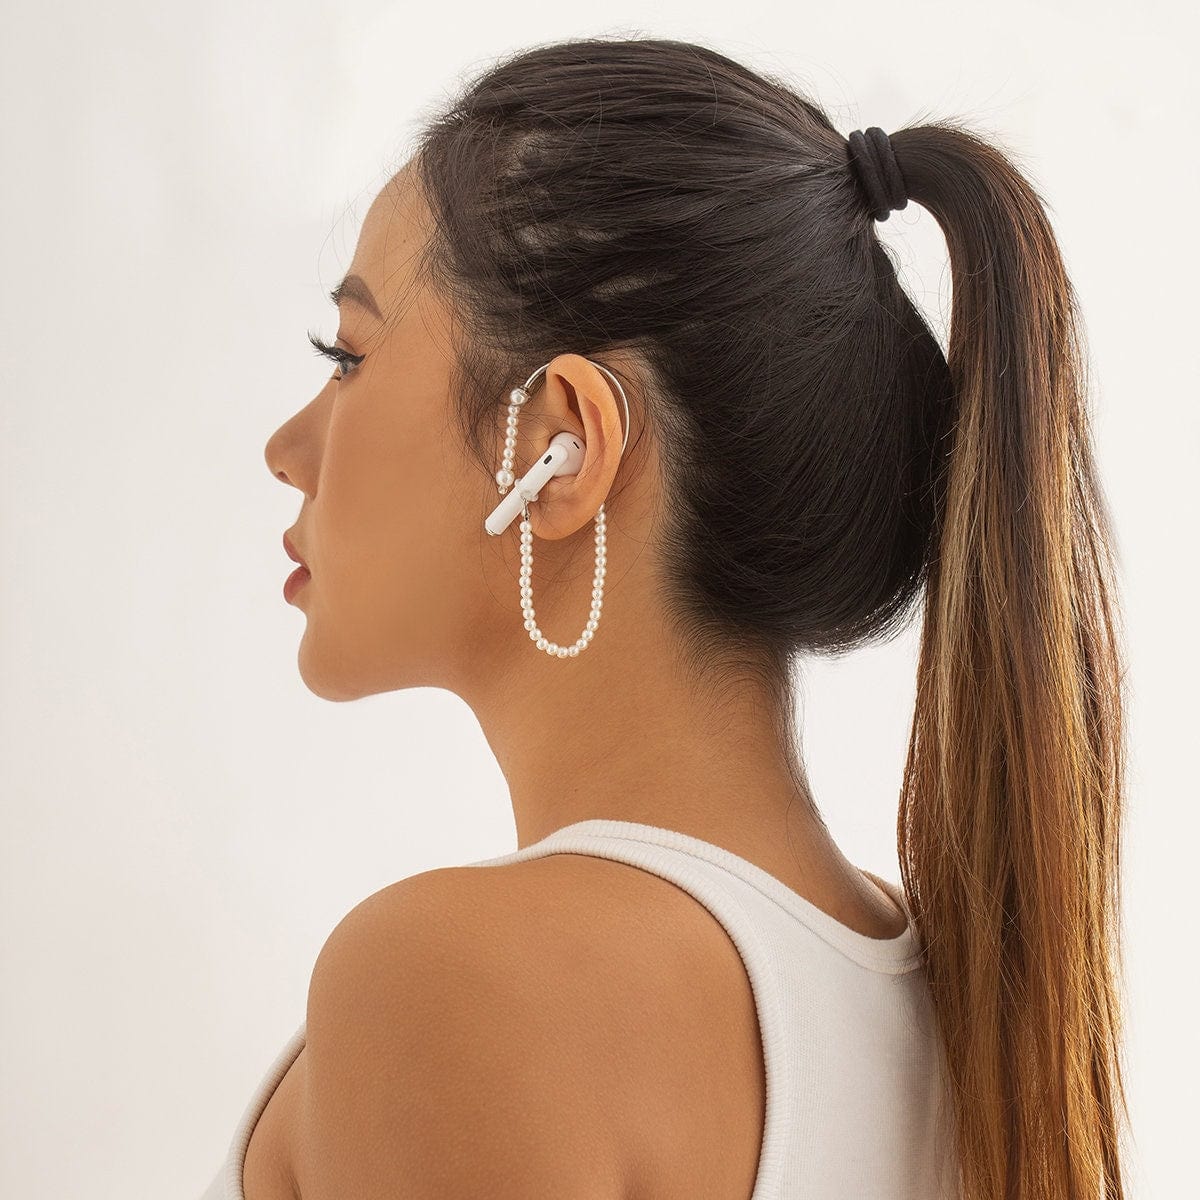 Chic Anti-lost Wireless AirPods Earphone Ear Wrap Pearl Chain Earrings